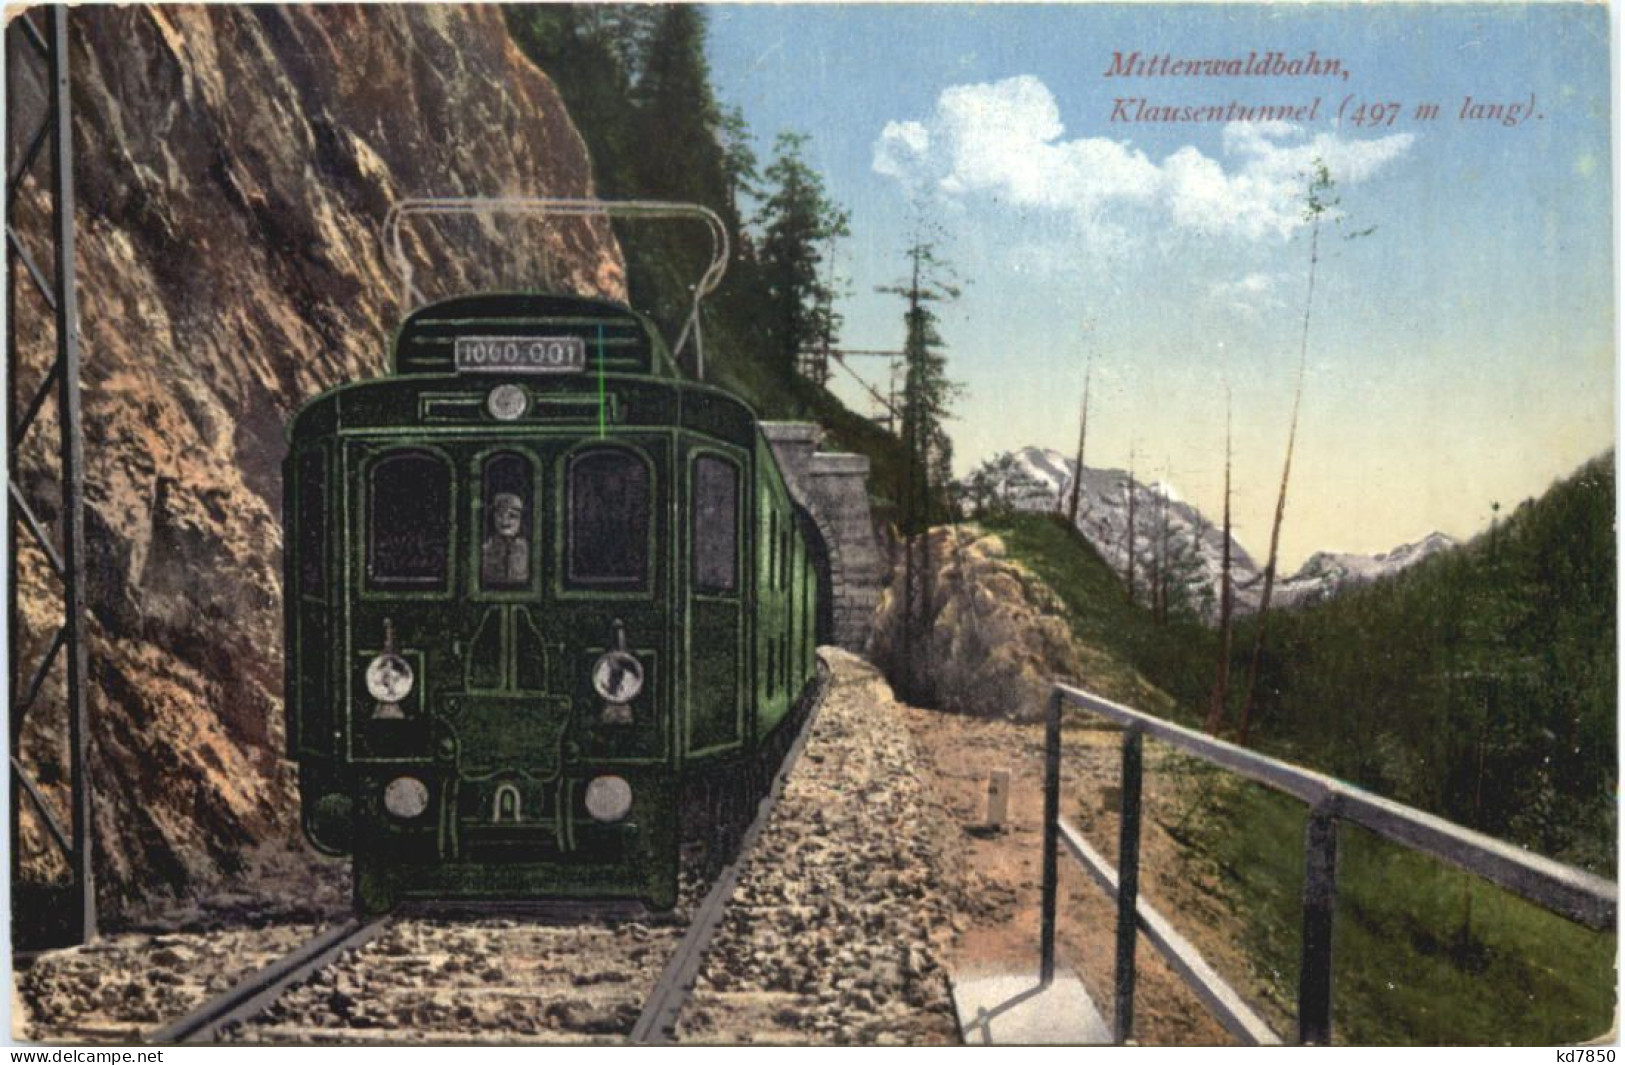 Mittenwaldbahn - Klausentunnel - Reutte